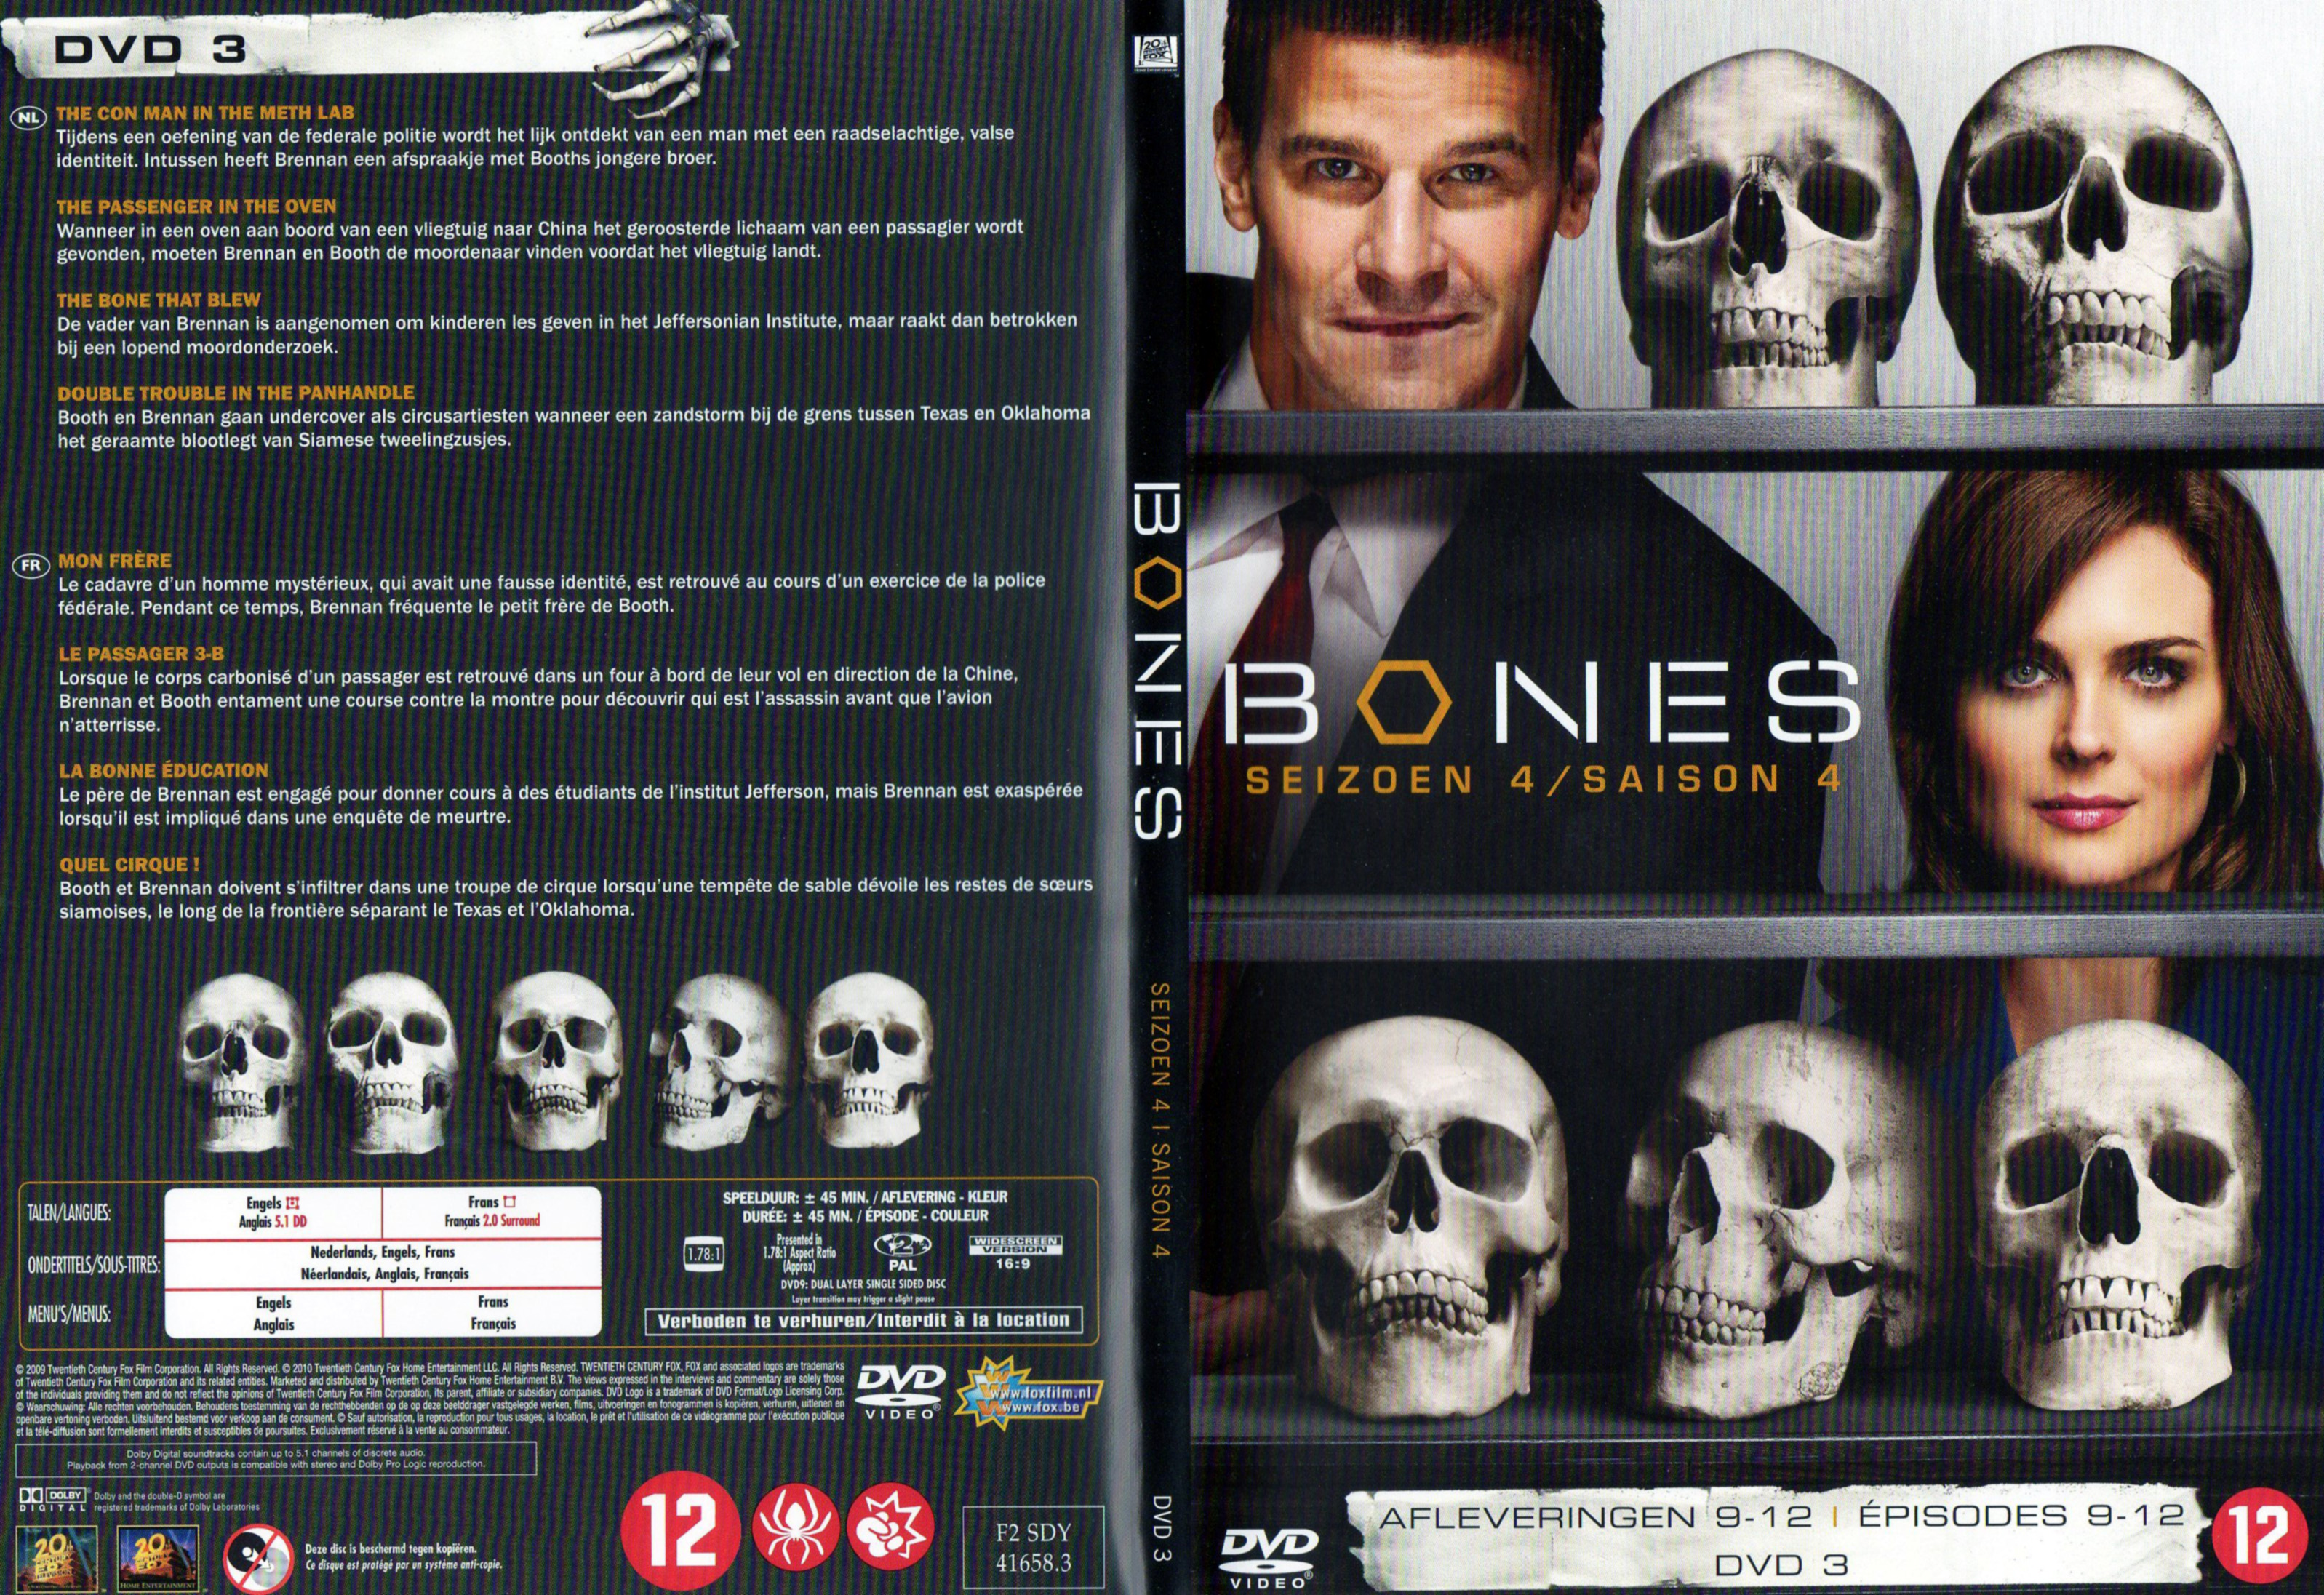 Jaquette DVD Bones Saison 4 DVD 3